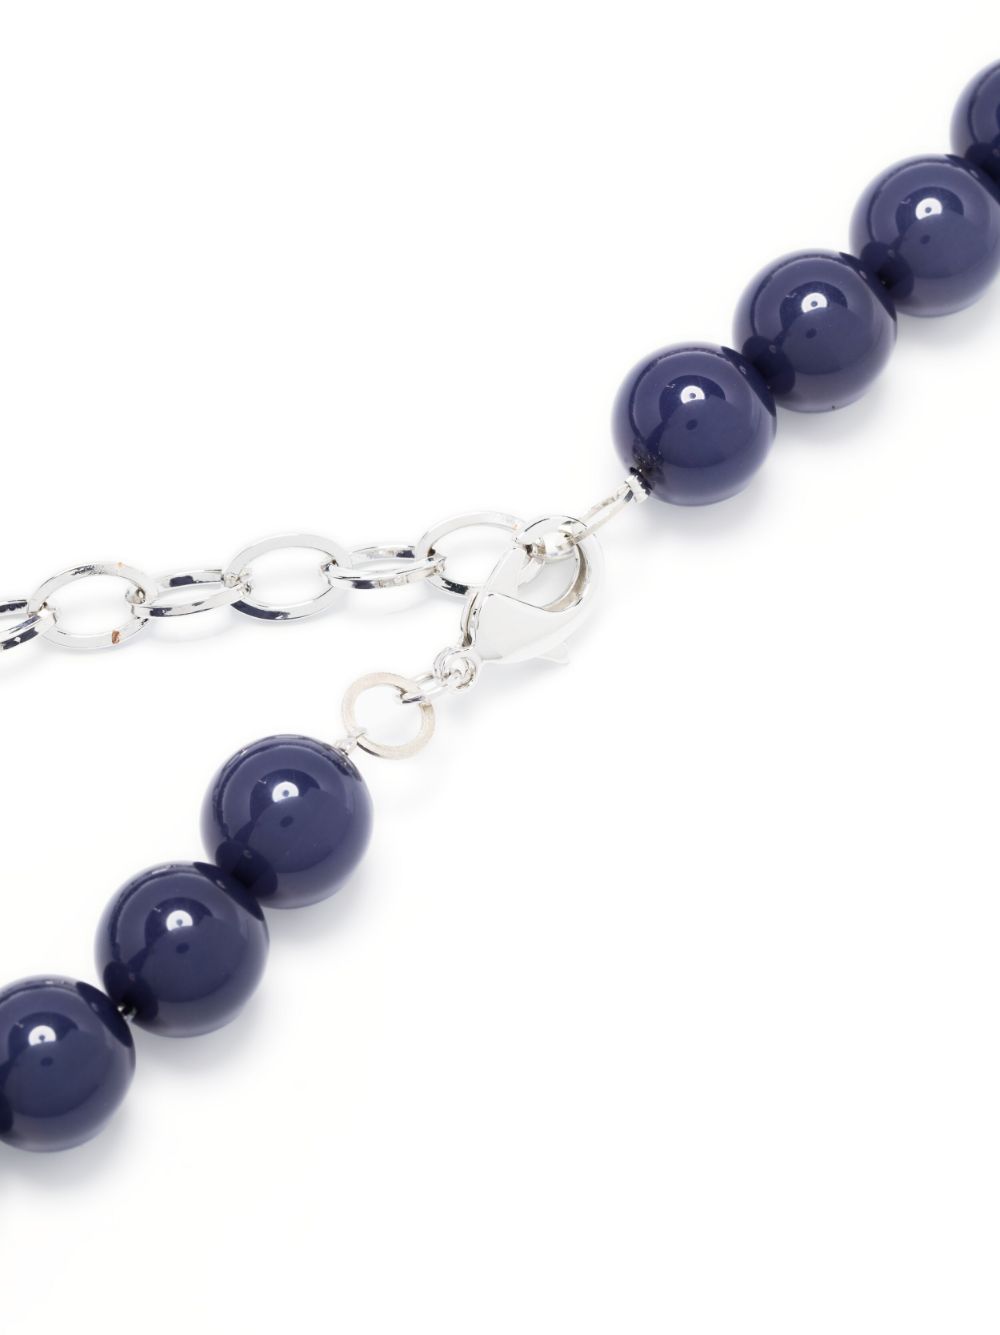 Emporio Armani Women's Lapis Lazuli Bracelets